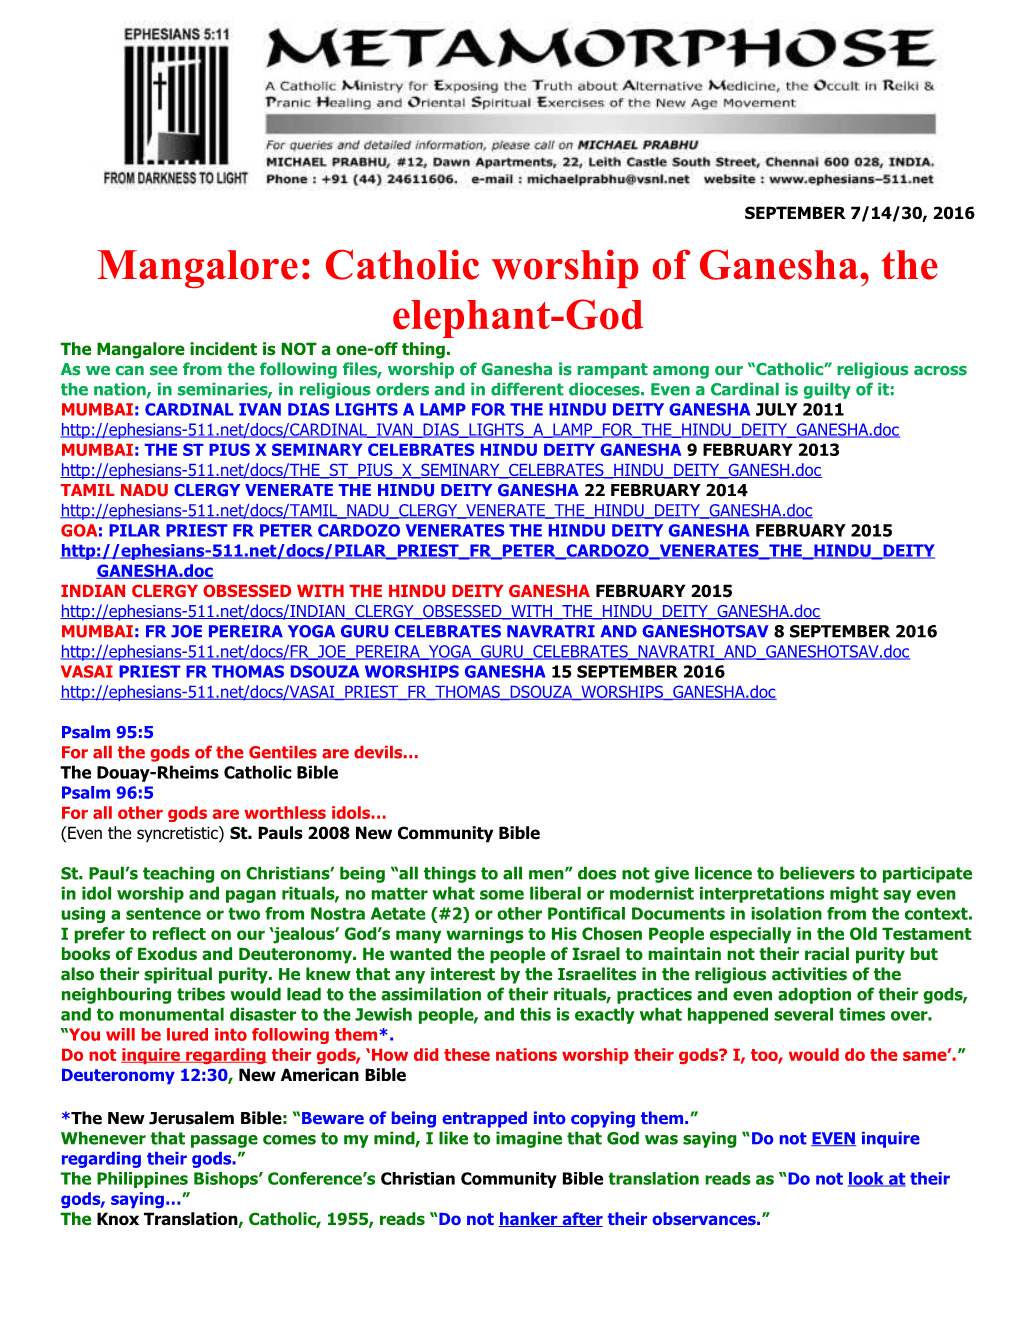 Mangalore: Catholic Worship of Ganesha, the Elephant-God